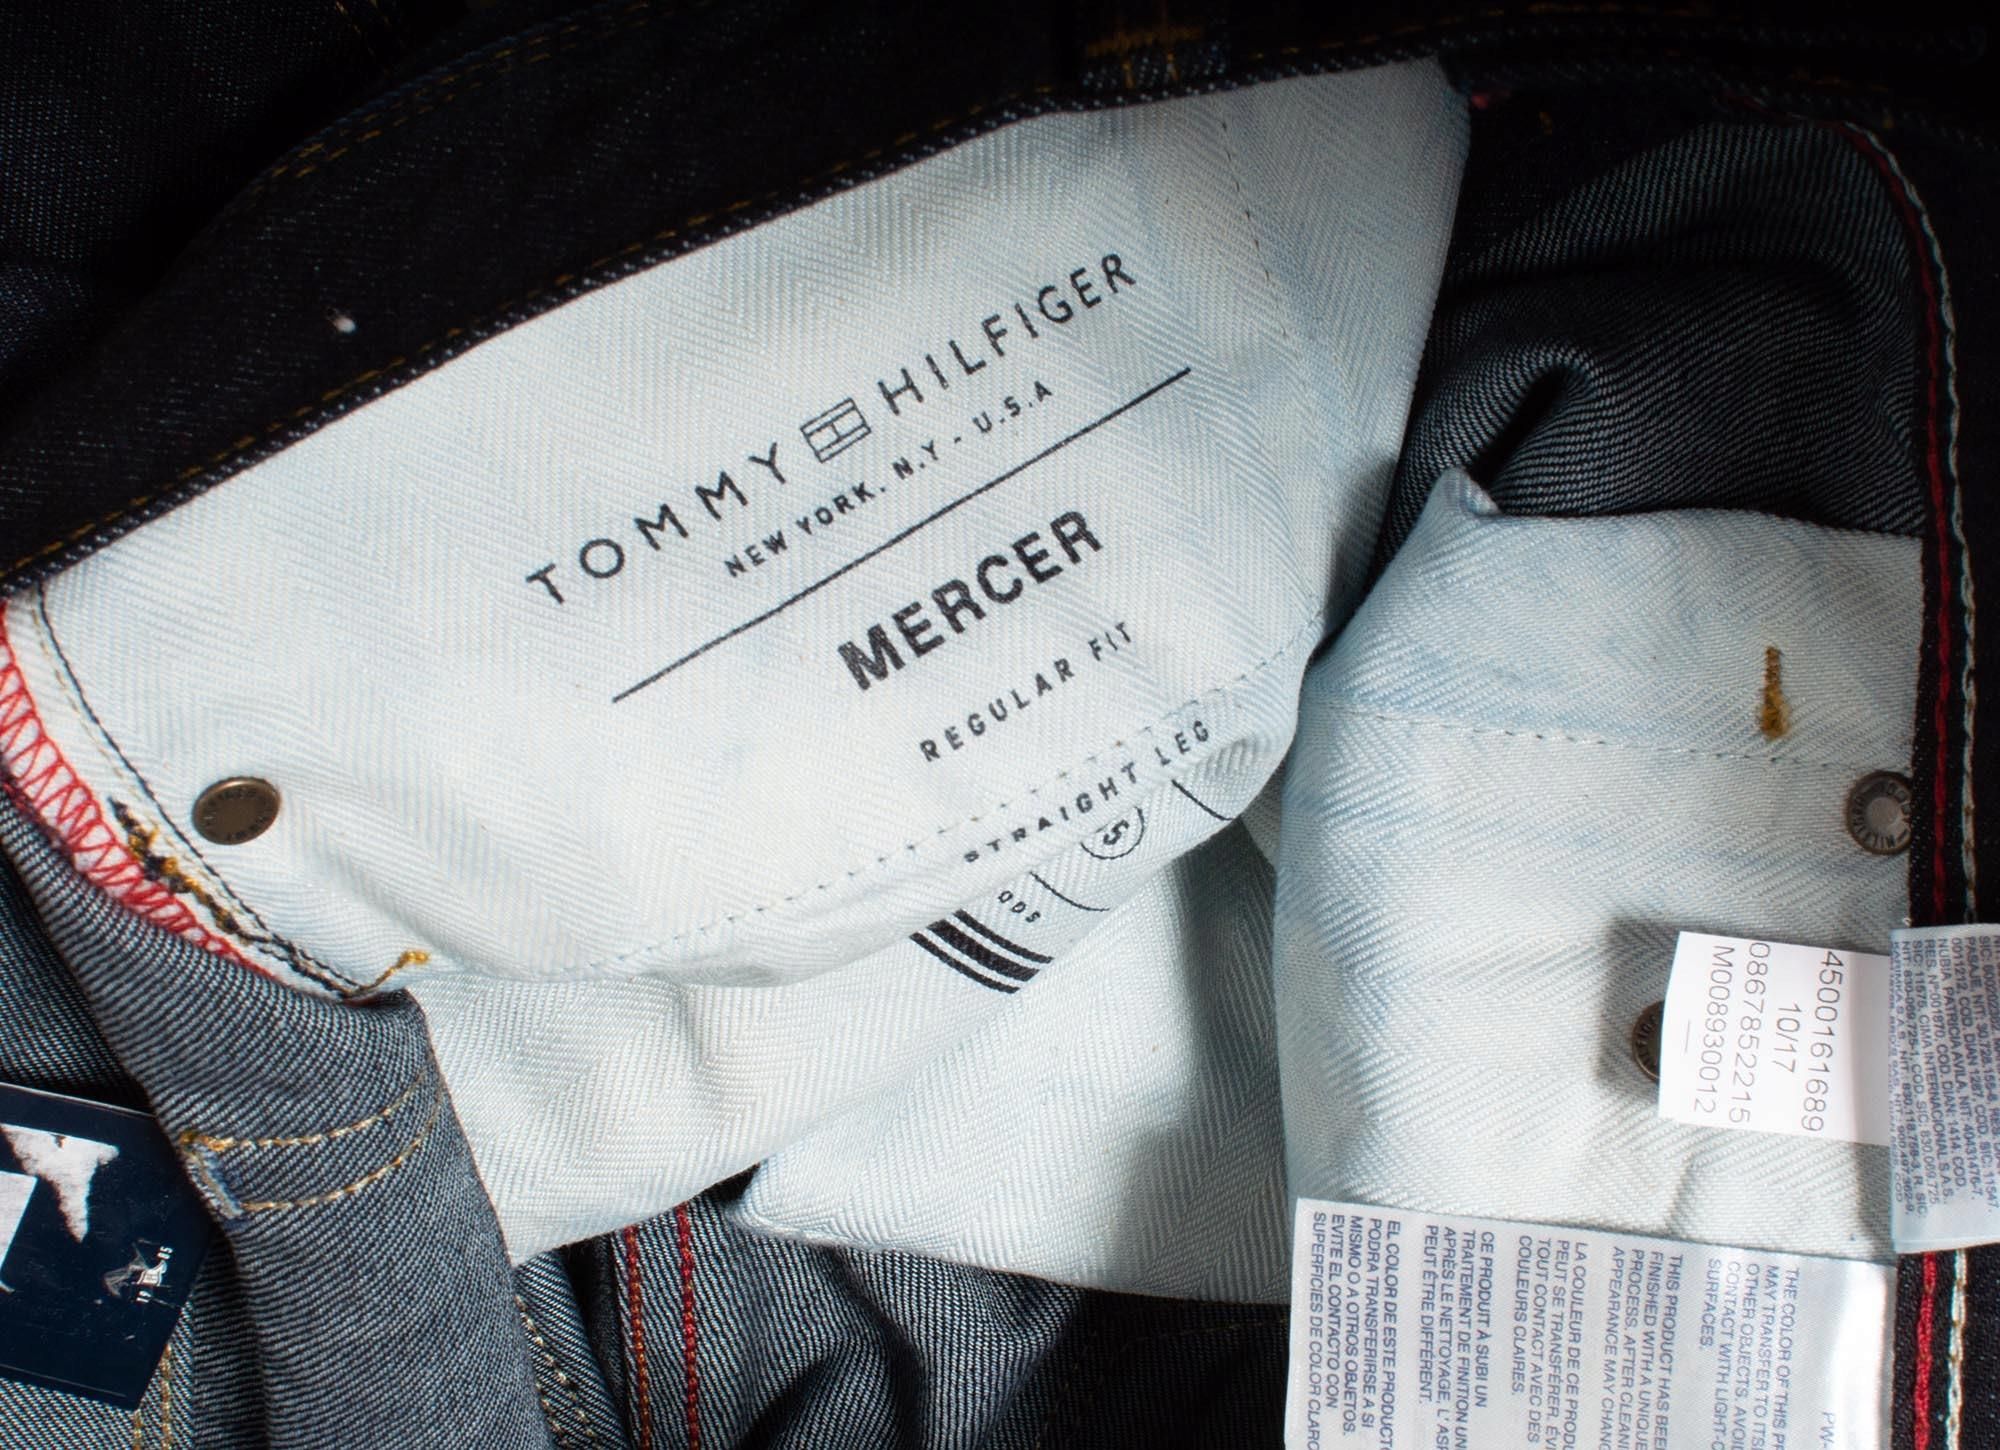 Spodnie proste Tommy Hilfiger Mercer jeans W33 L32 Ceny i opinie - Ceneo.pl